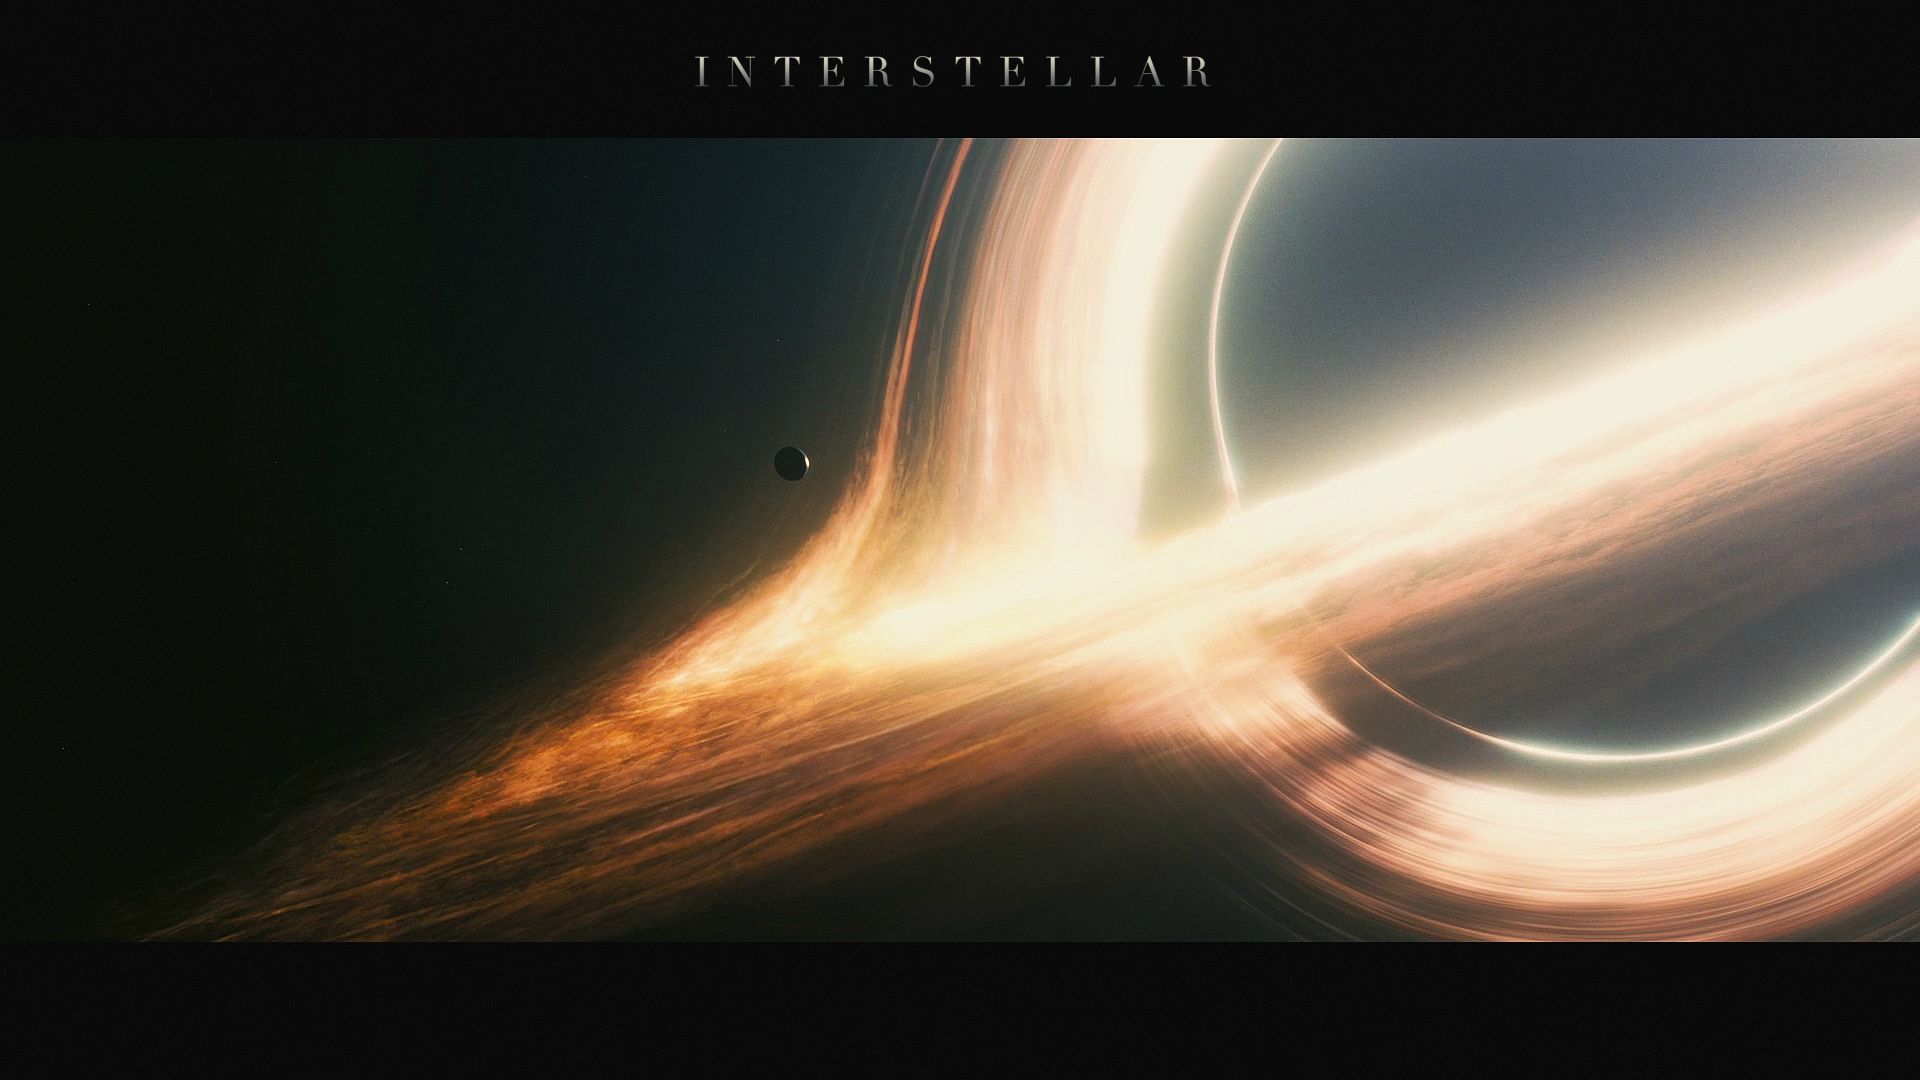 interstellar.jpg